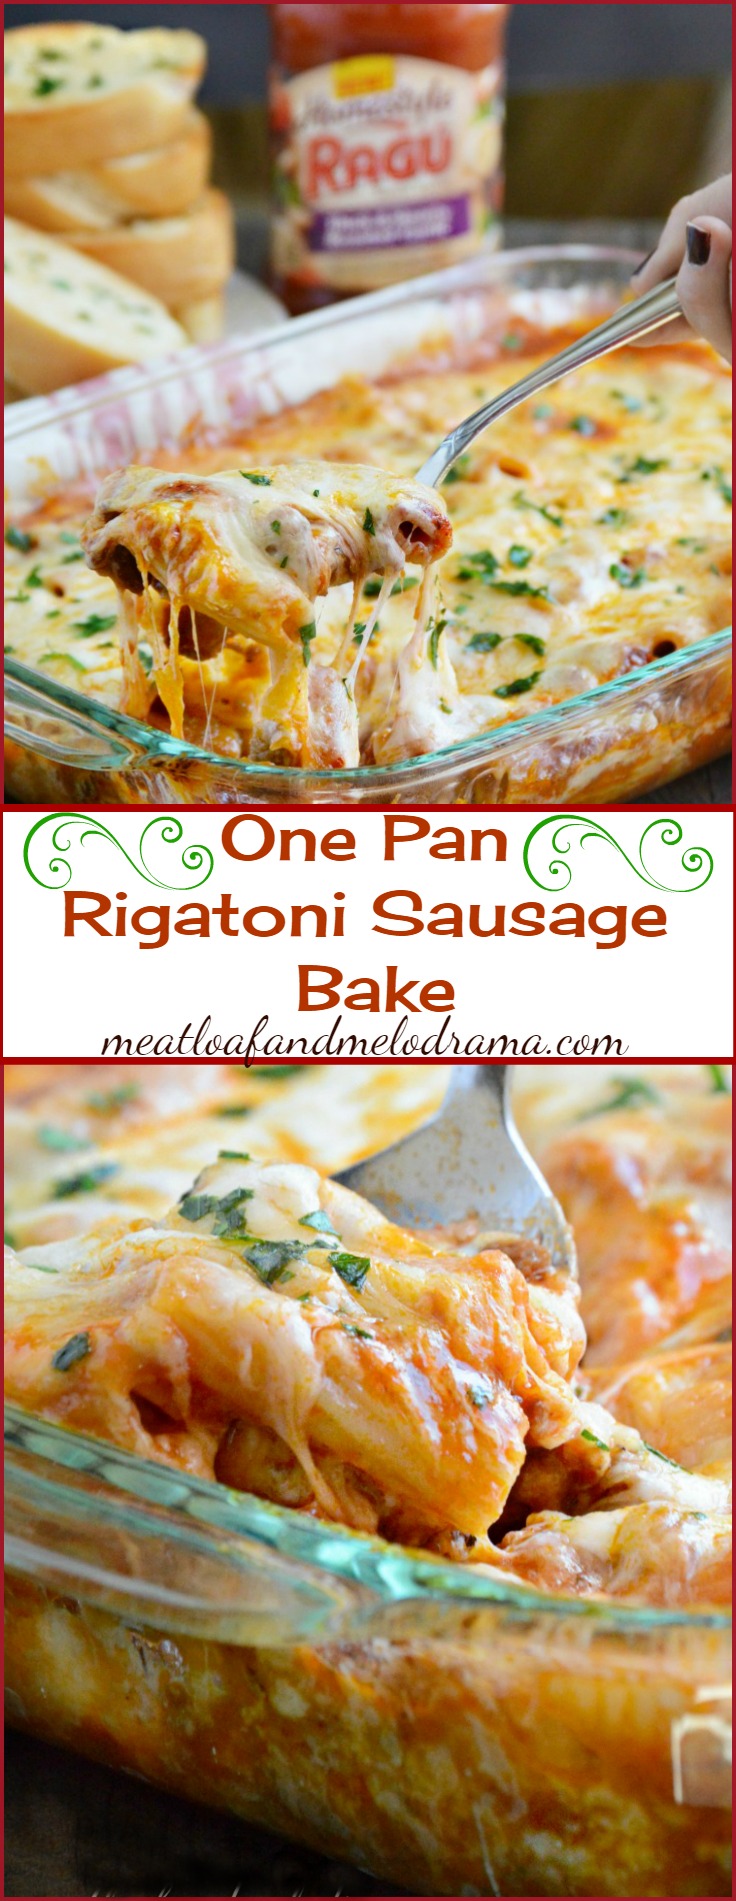 One Pan Rigatoni Sausage Bake Recipe